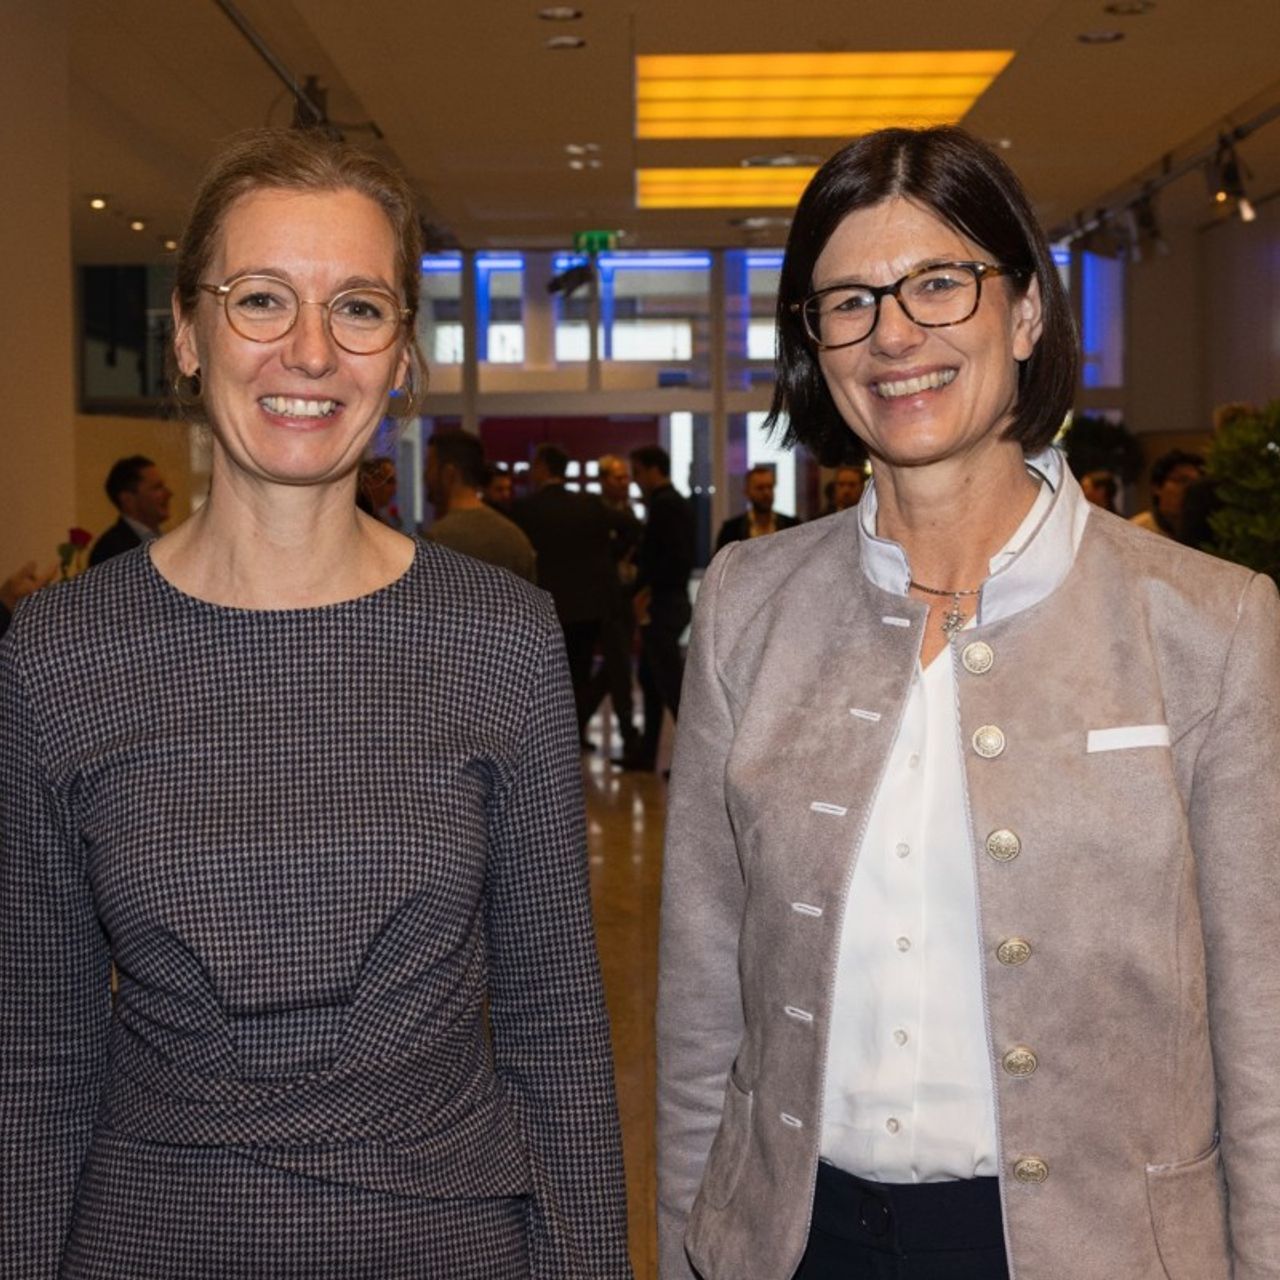 Sabine Mounani, podpredsednica vlade in ministrica za gospodarstvo Liechtensteina, in Catrin Hinkel, izvršna direktorica Microsofta v Švici